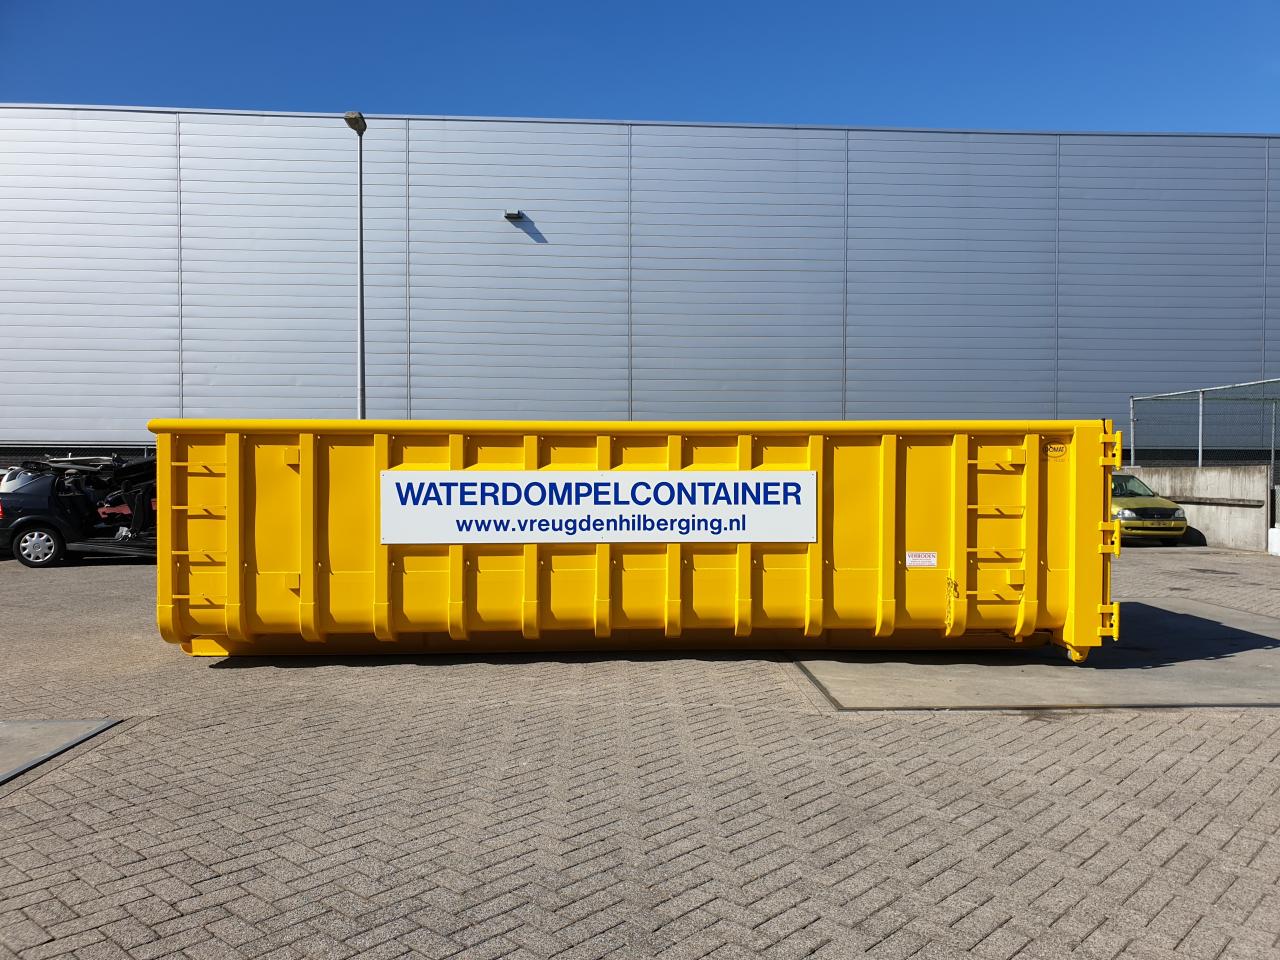 Waterdompelcontainer van de Veiligheidsregio Haaglanden